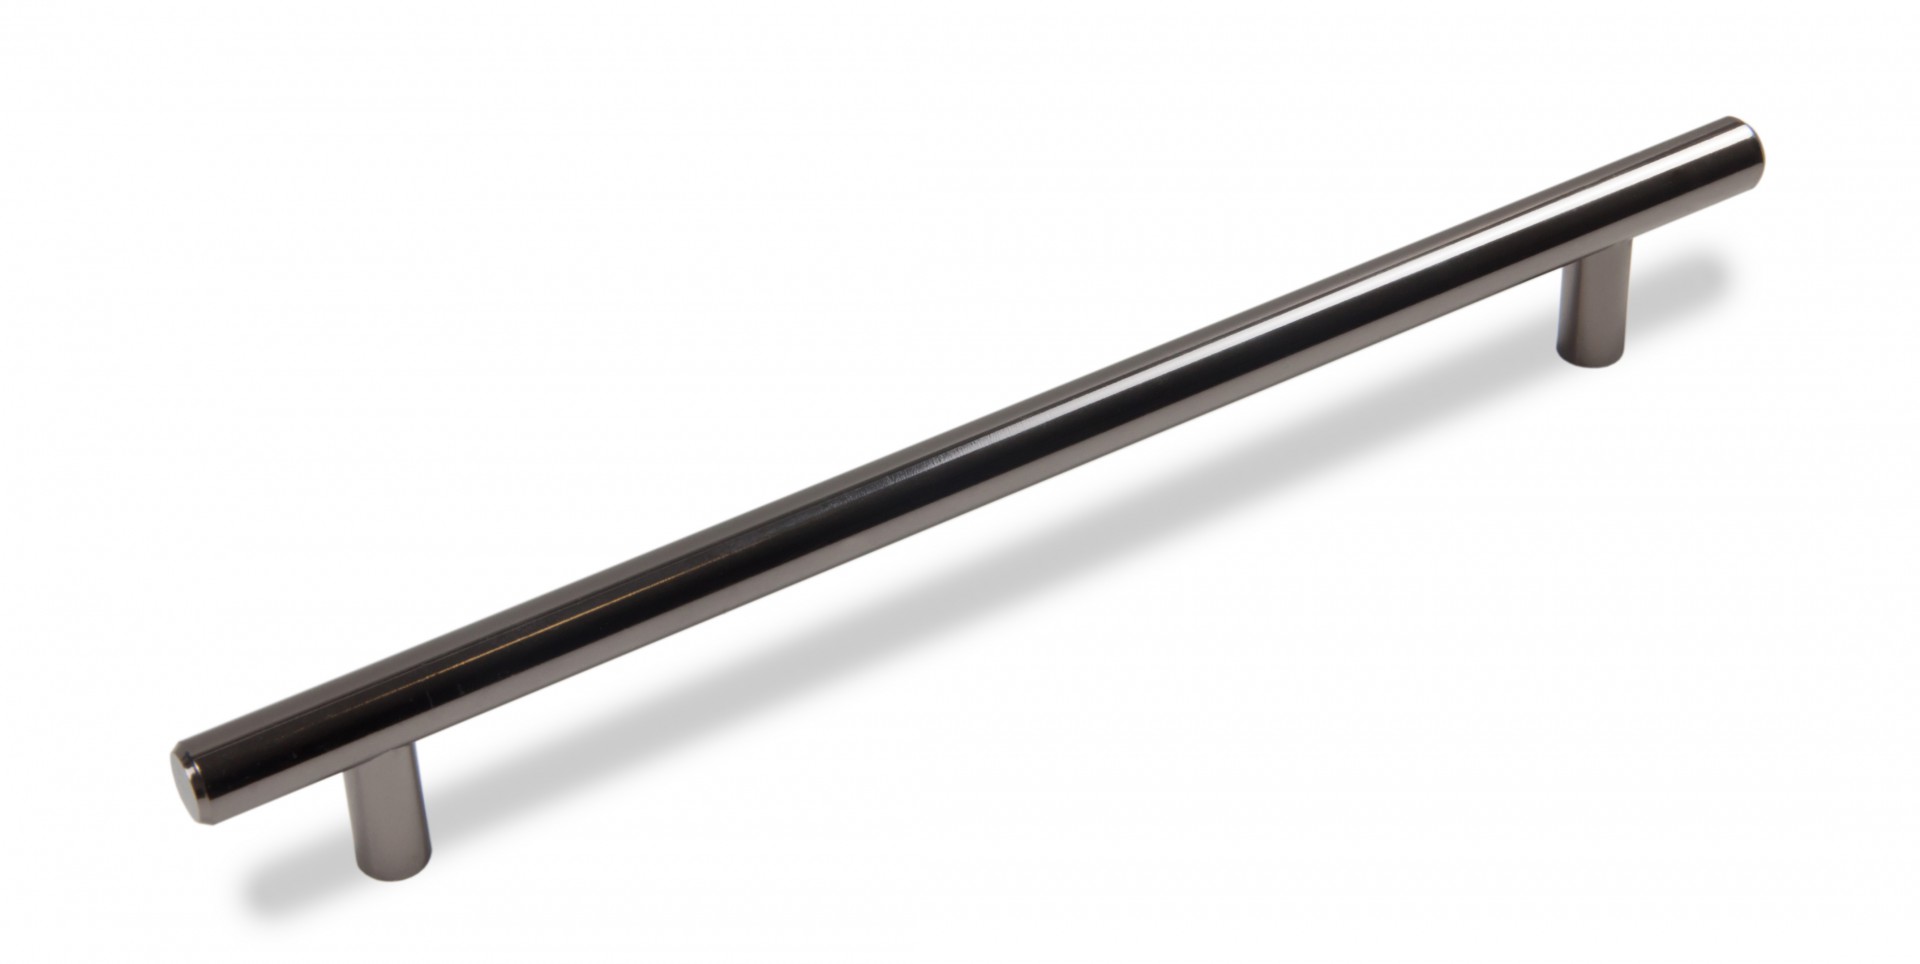 Ручка мебельная рейлинг 224мм черный никель RR002BN.5/224 Boyard / 719947-1 / оптом и в розницу / мебельная фурнитура "ЛАВР"